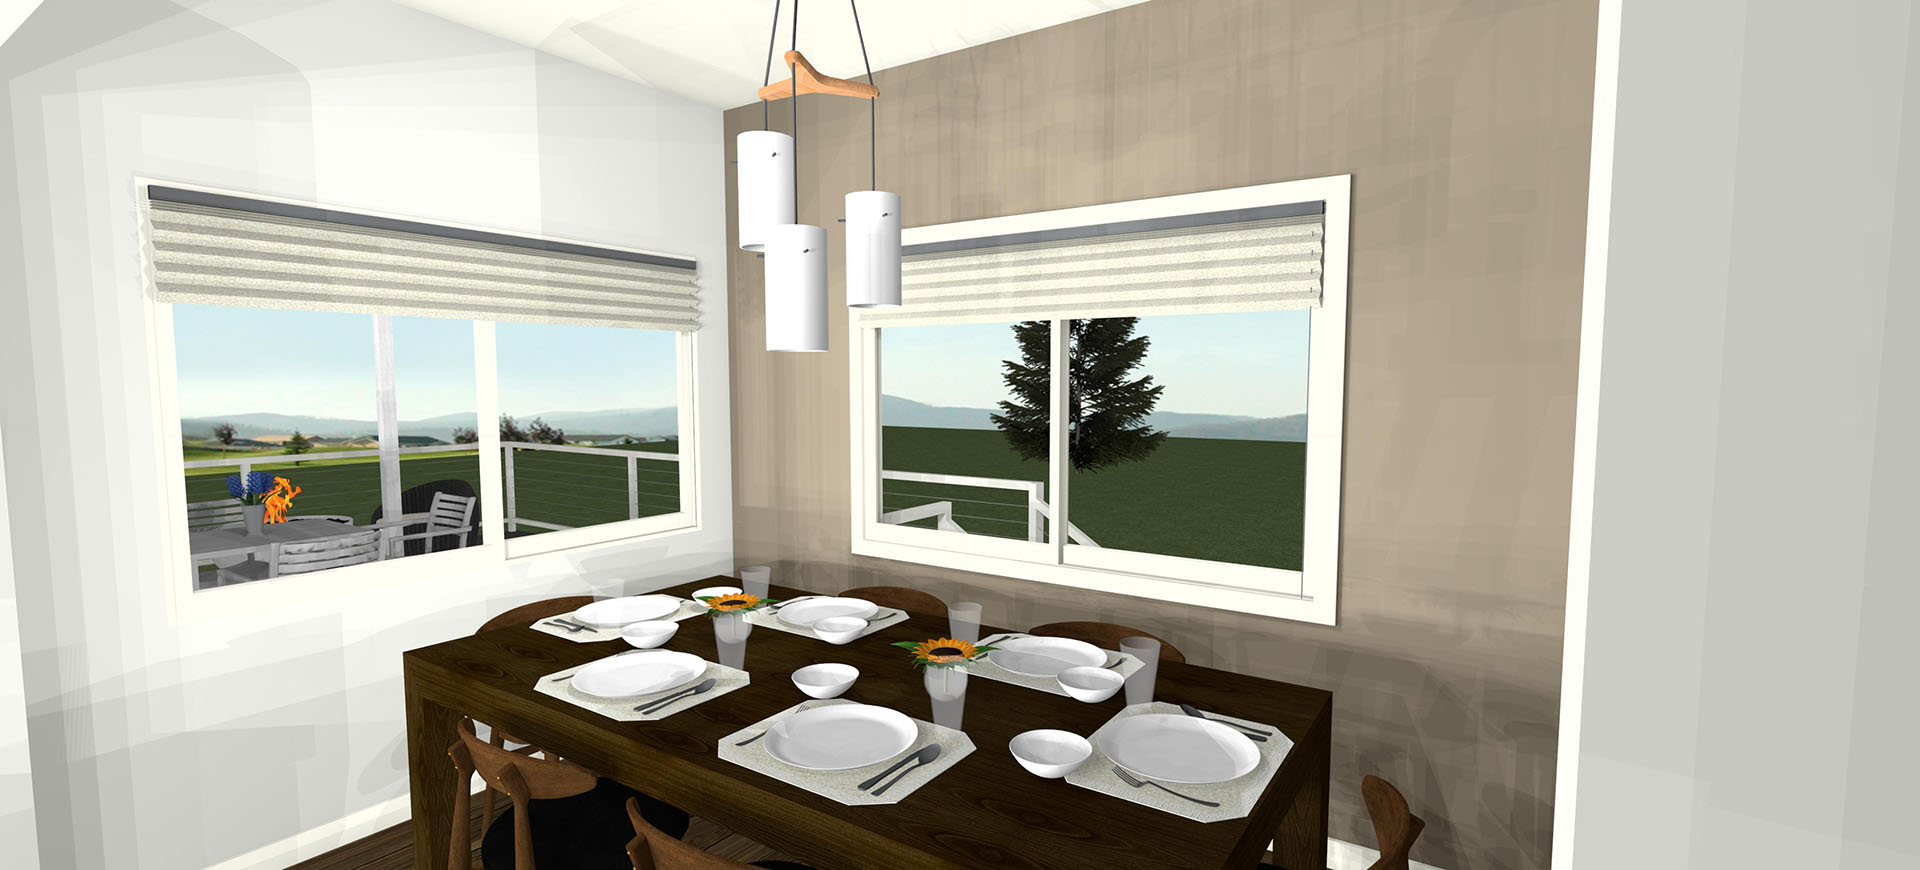 Pikake interior dining room with windows